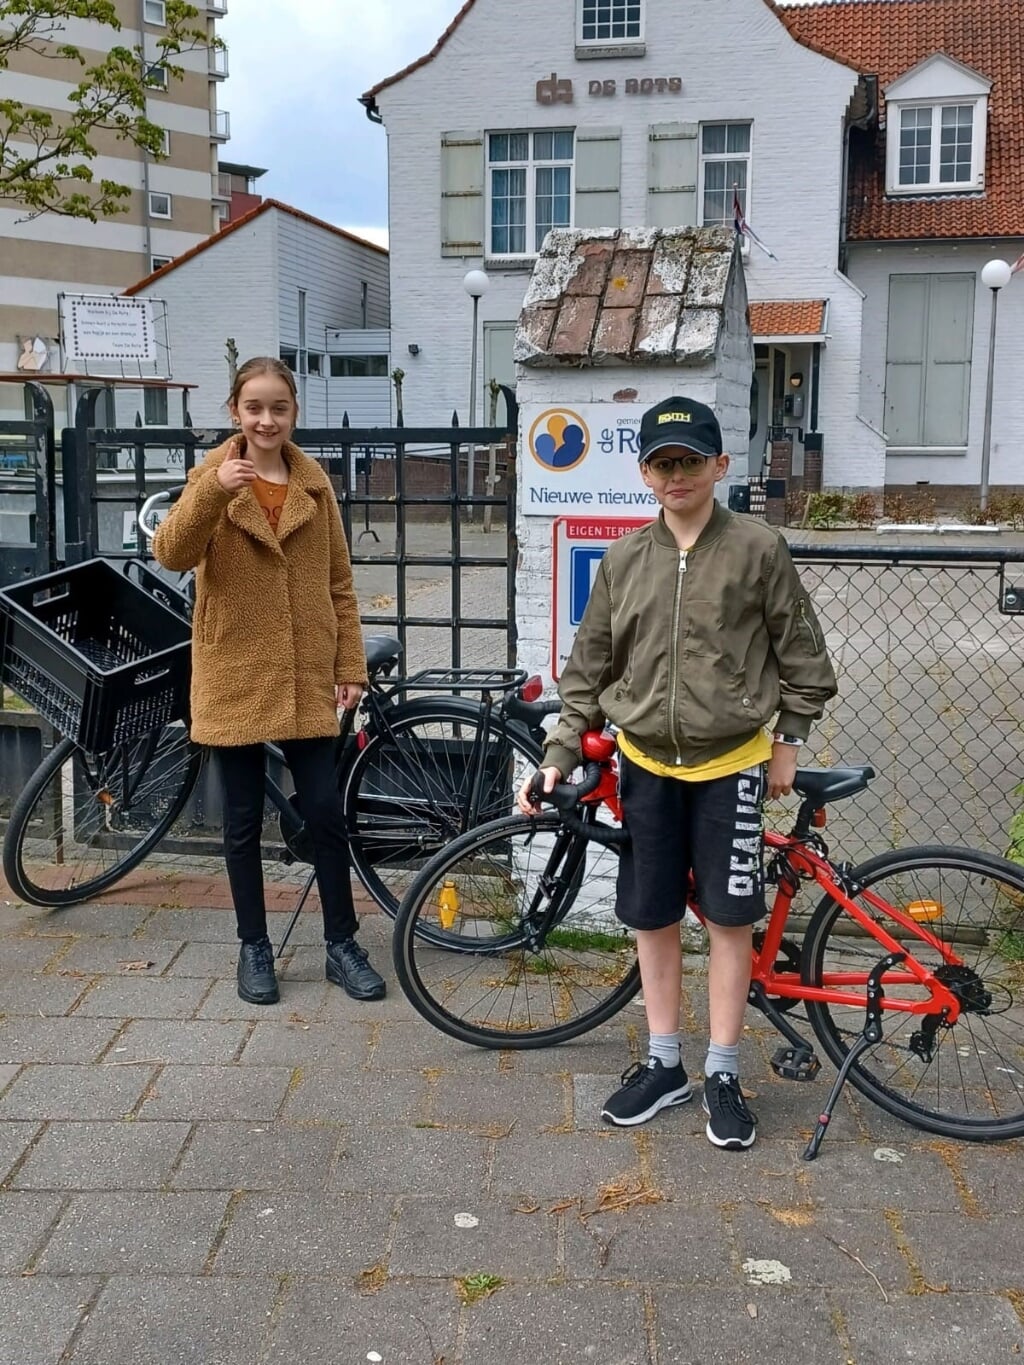 Alicia Swinkels en Jayden van den Boogaard, ook uit groep 7 van de Angelaschool, zijn net klaar met hun ronde voor het fietsexamen. Ze horen maandag of ze zijn geslaagd. (Foto: eigen collectie).